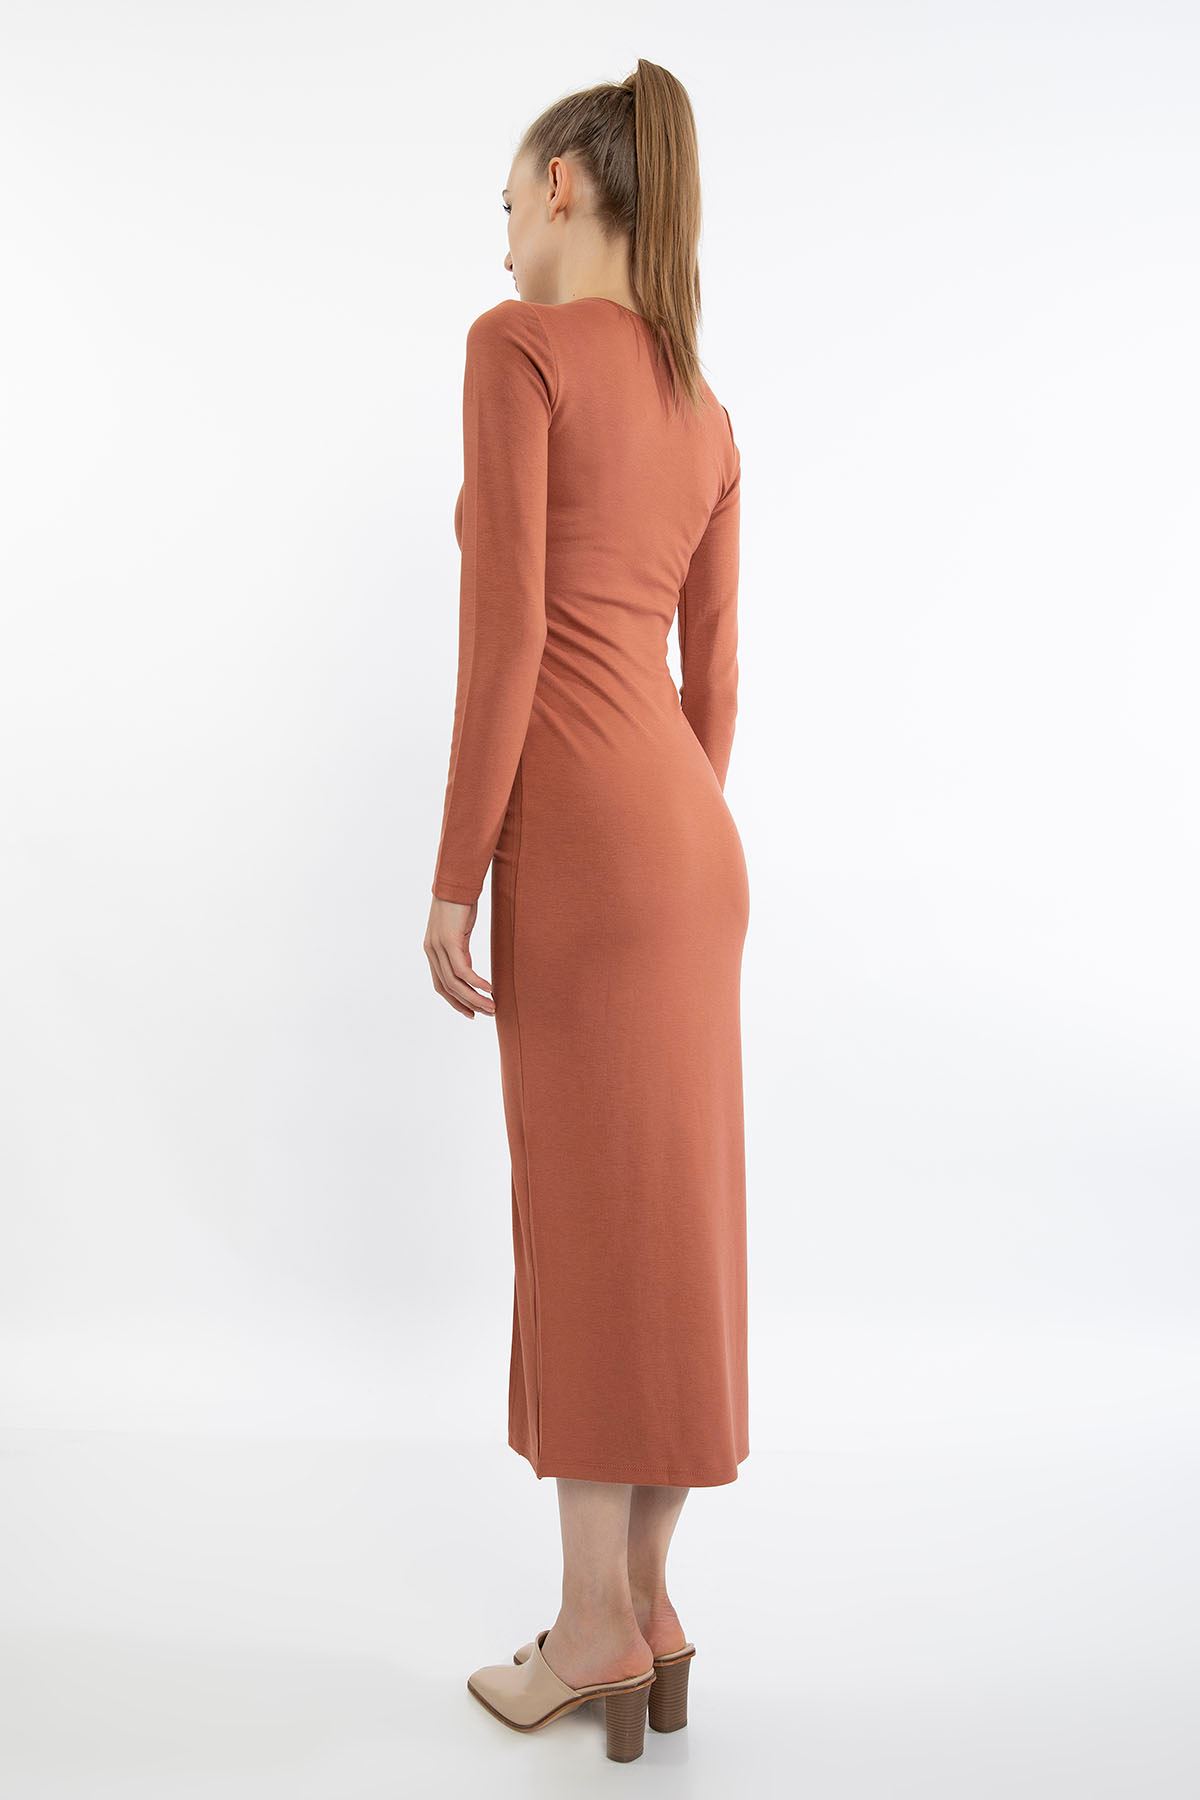 Çelik Örme Kumaş Dar Kalıp Büzgü Detay Yırtmaçlı Kadın Elbise-Taba